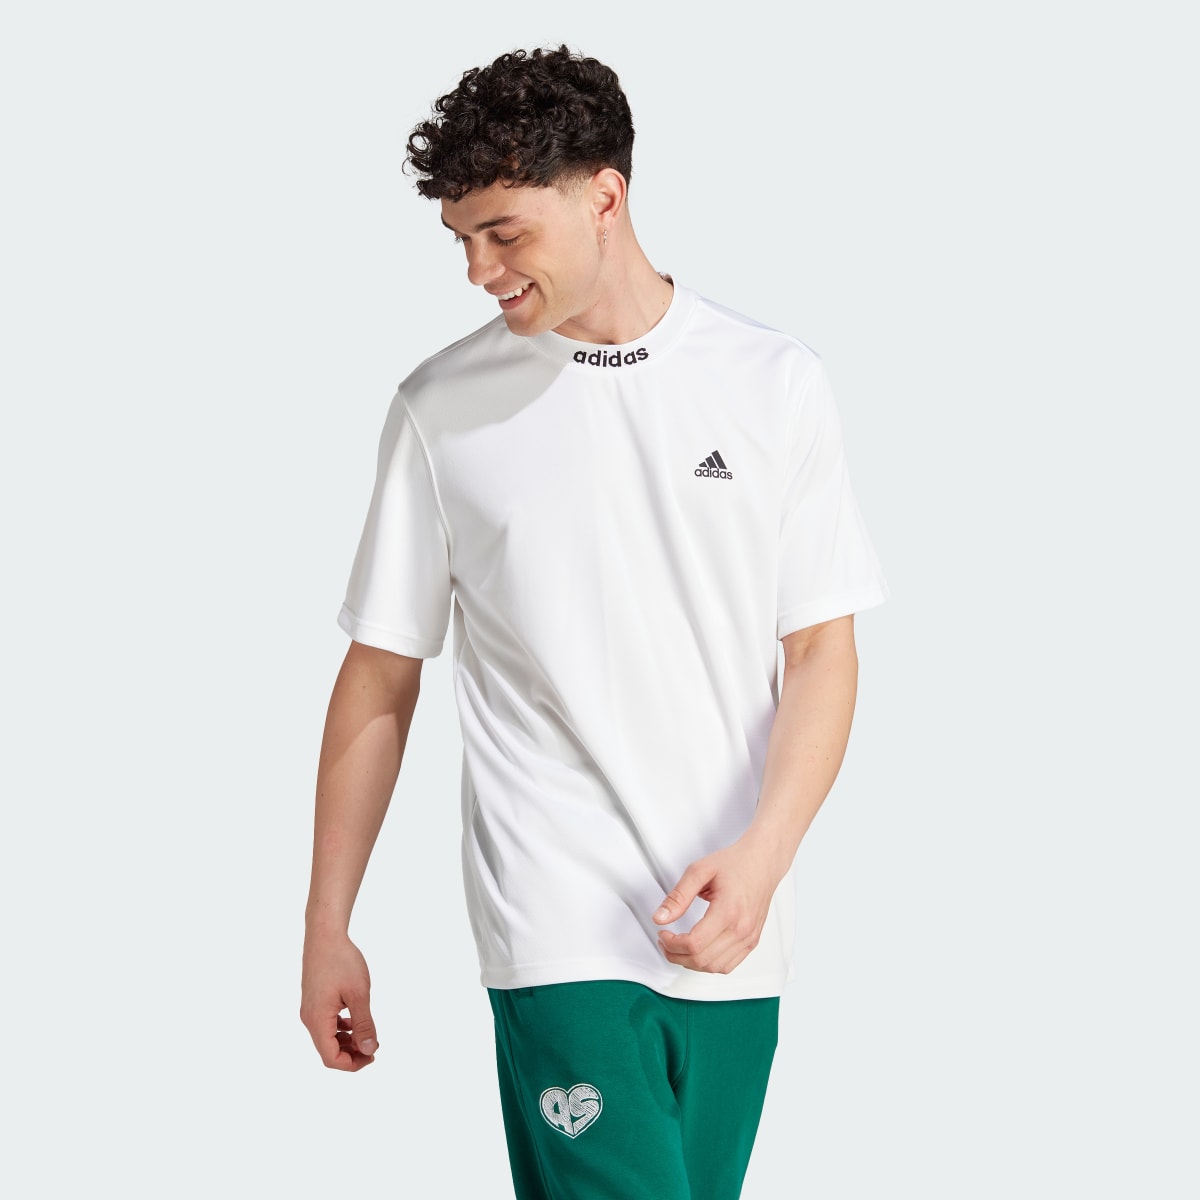 Adidas T-shirt com Costas em Rede. 4